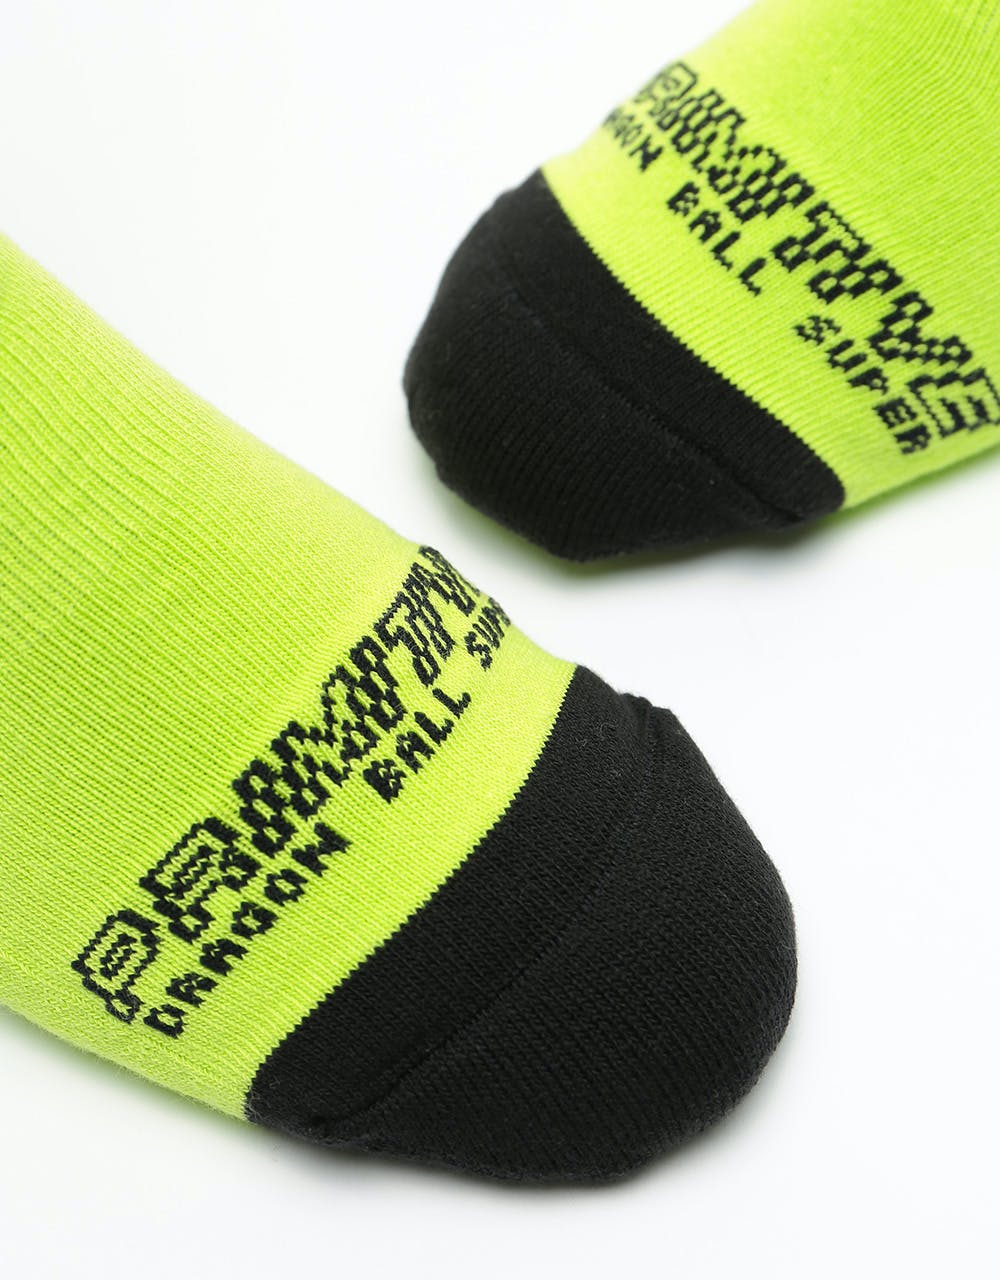 Primitive x Dragon Ball Super Androids Socks - Neon Green